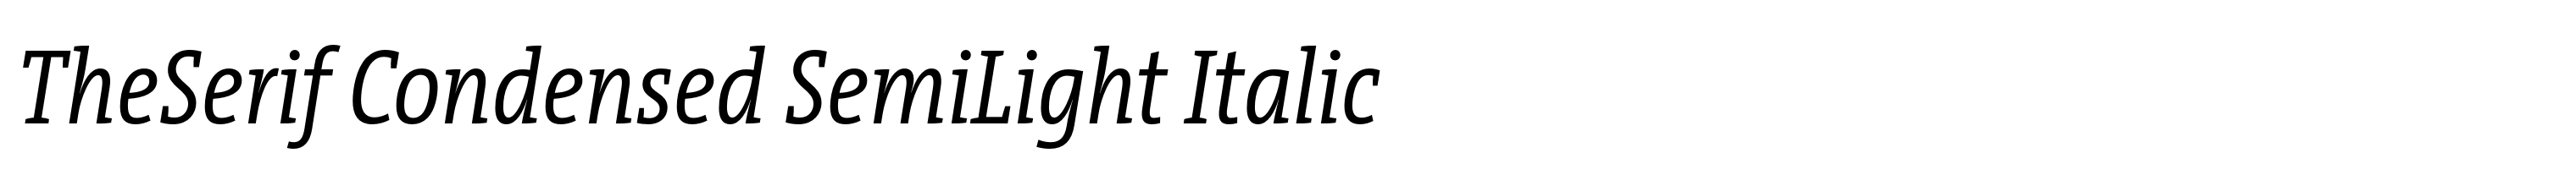 TheSerif Condensed SemiLight Italic